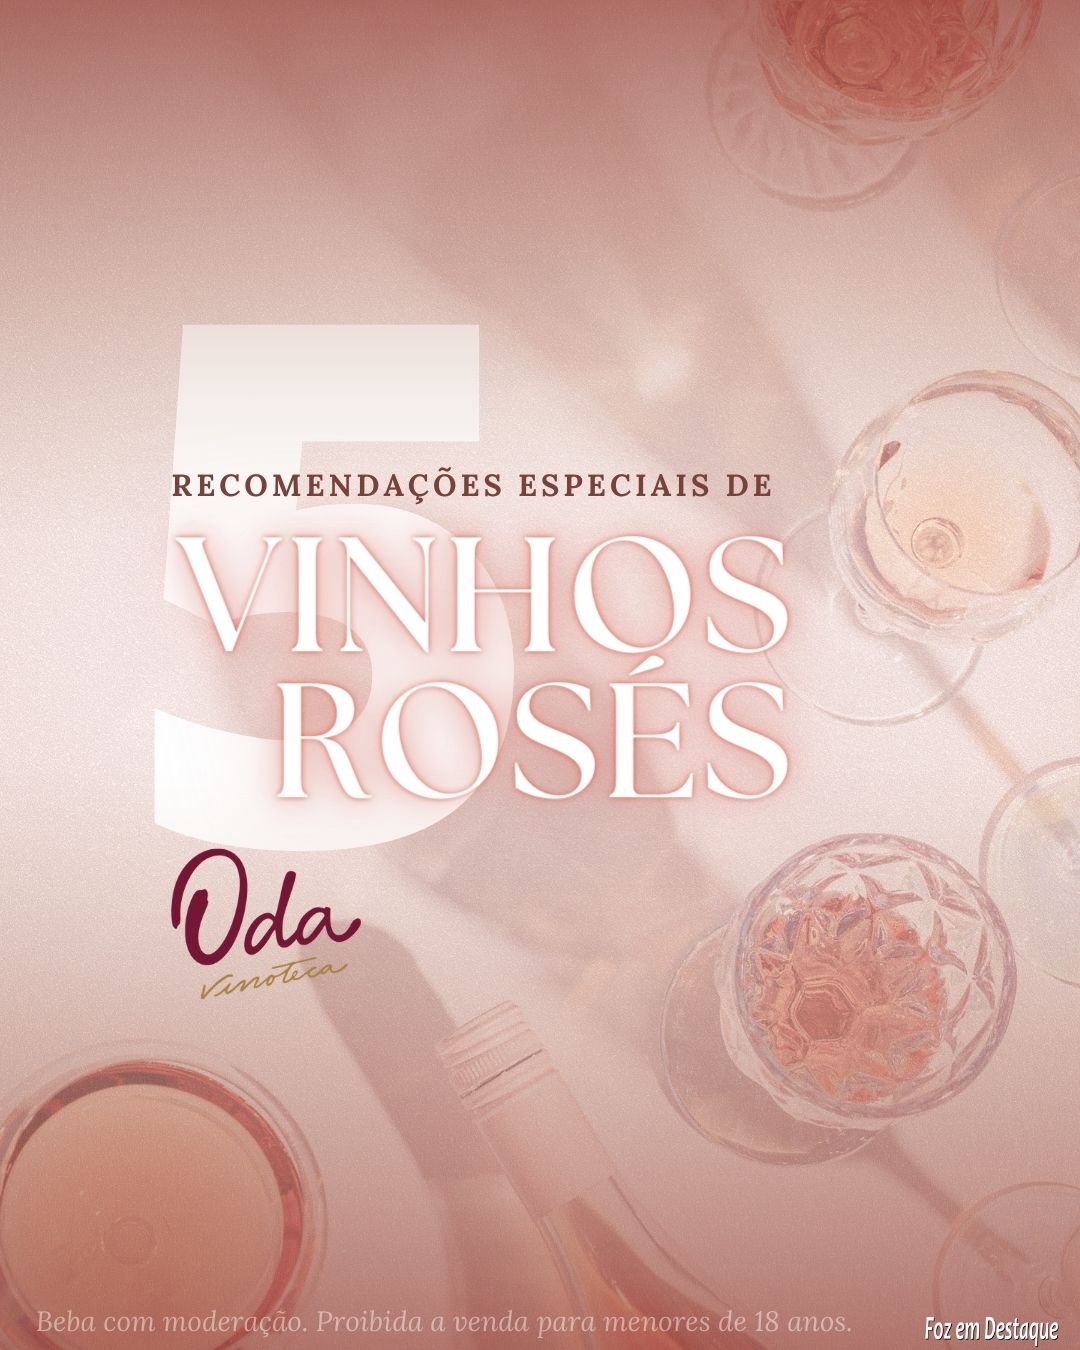 Vinhos Rosés: recomendação especial da Oda Vinoteca